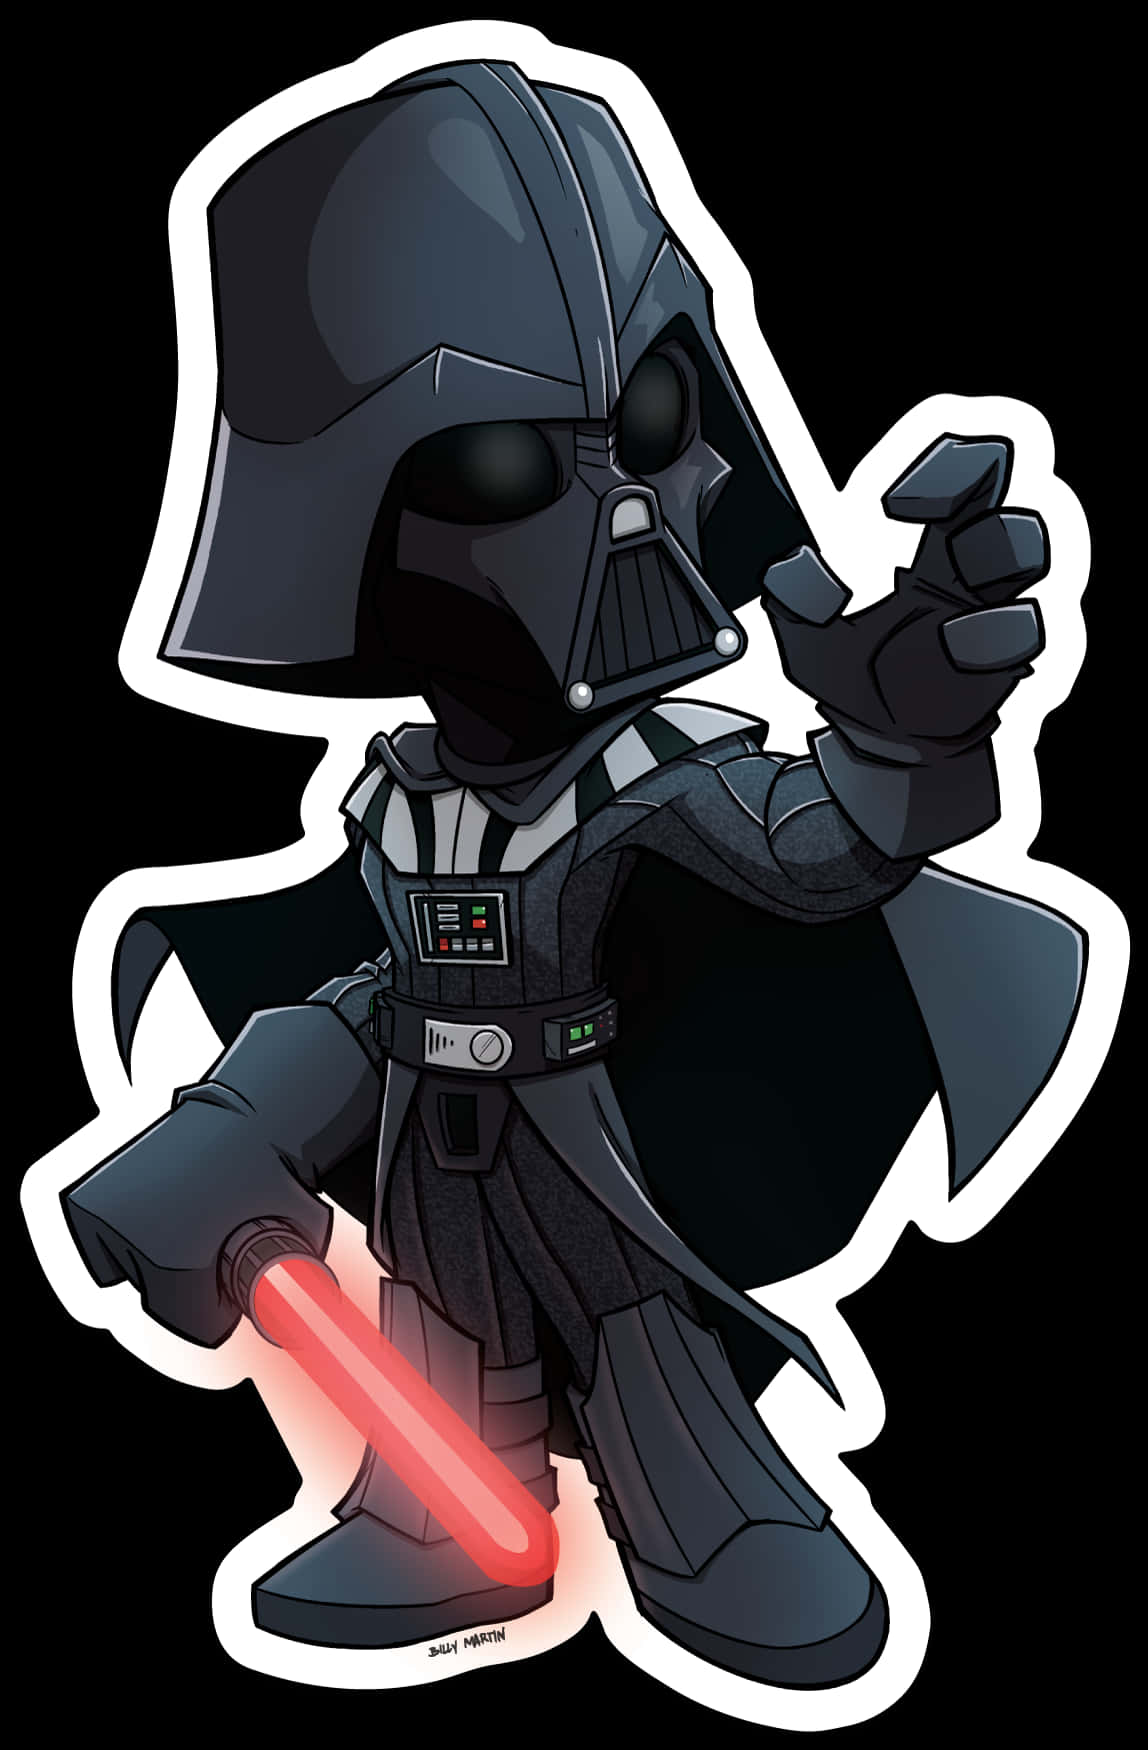 Chibi Darth Vader Illustration